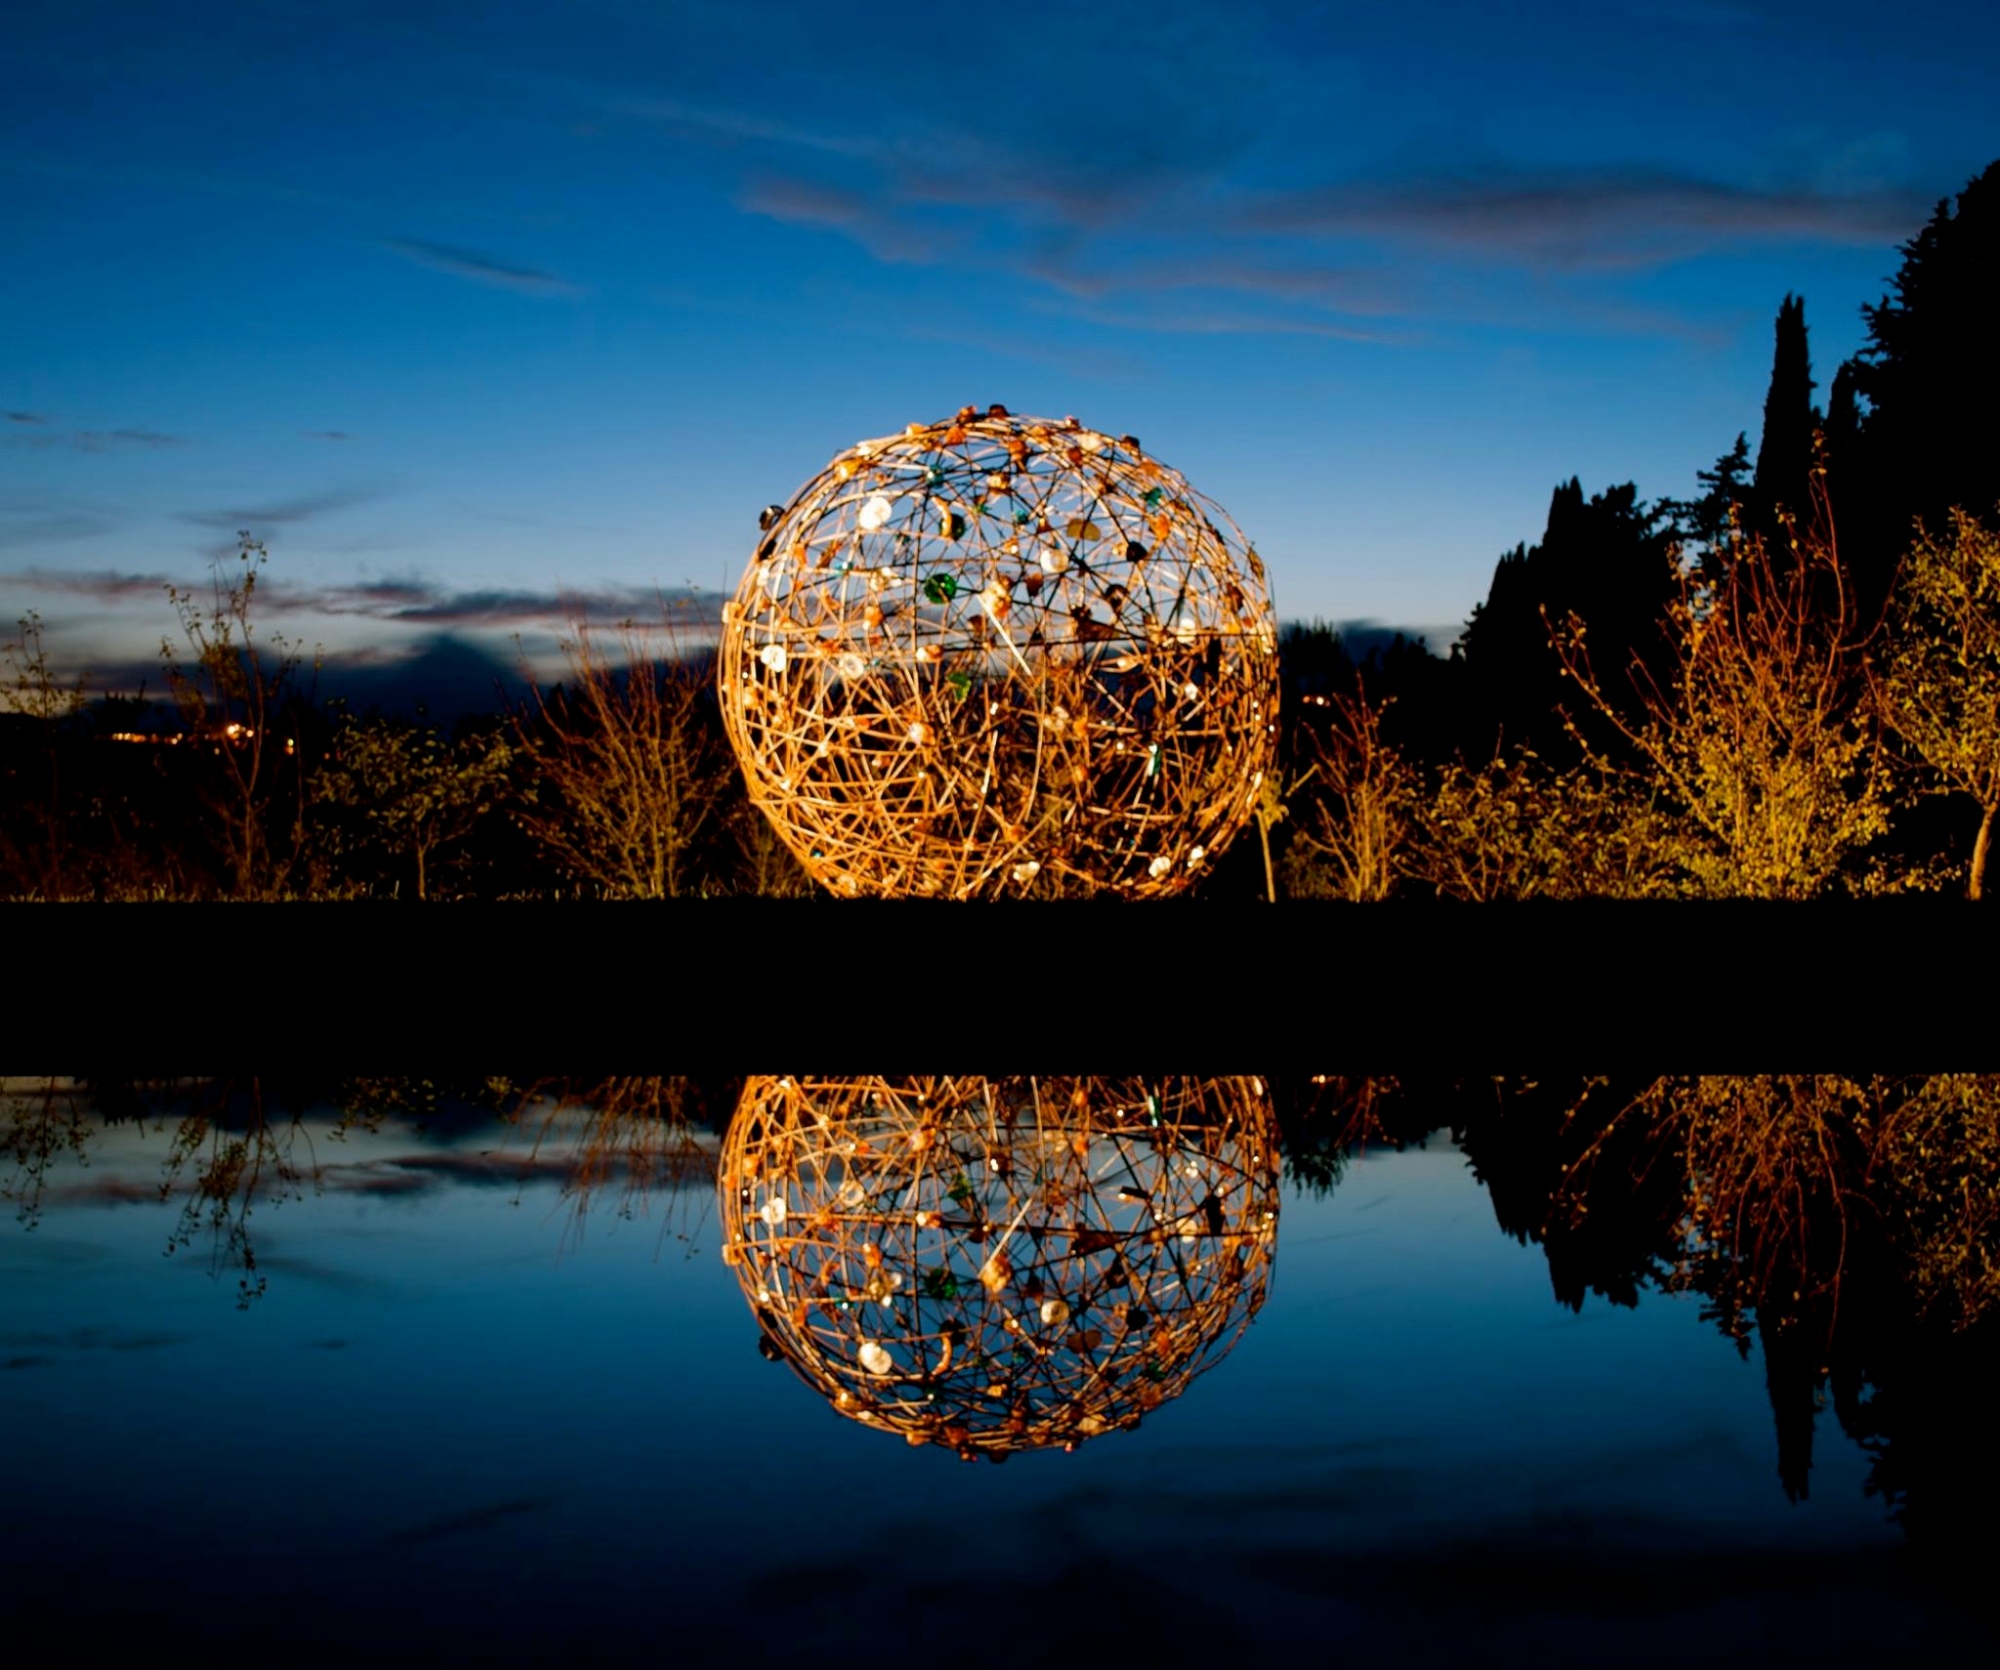 Sphere of light, Rodolfo Lacquaniti